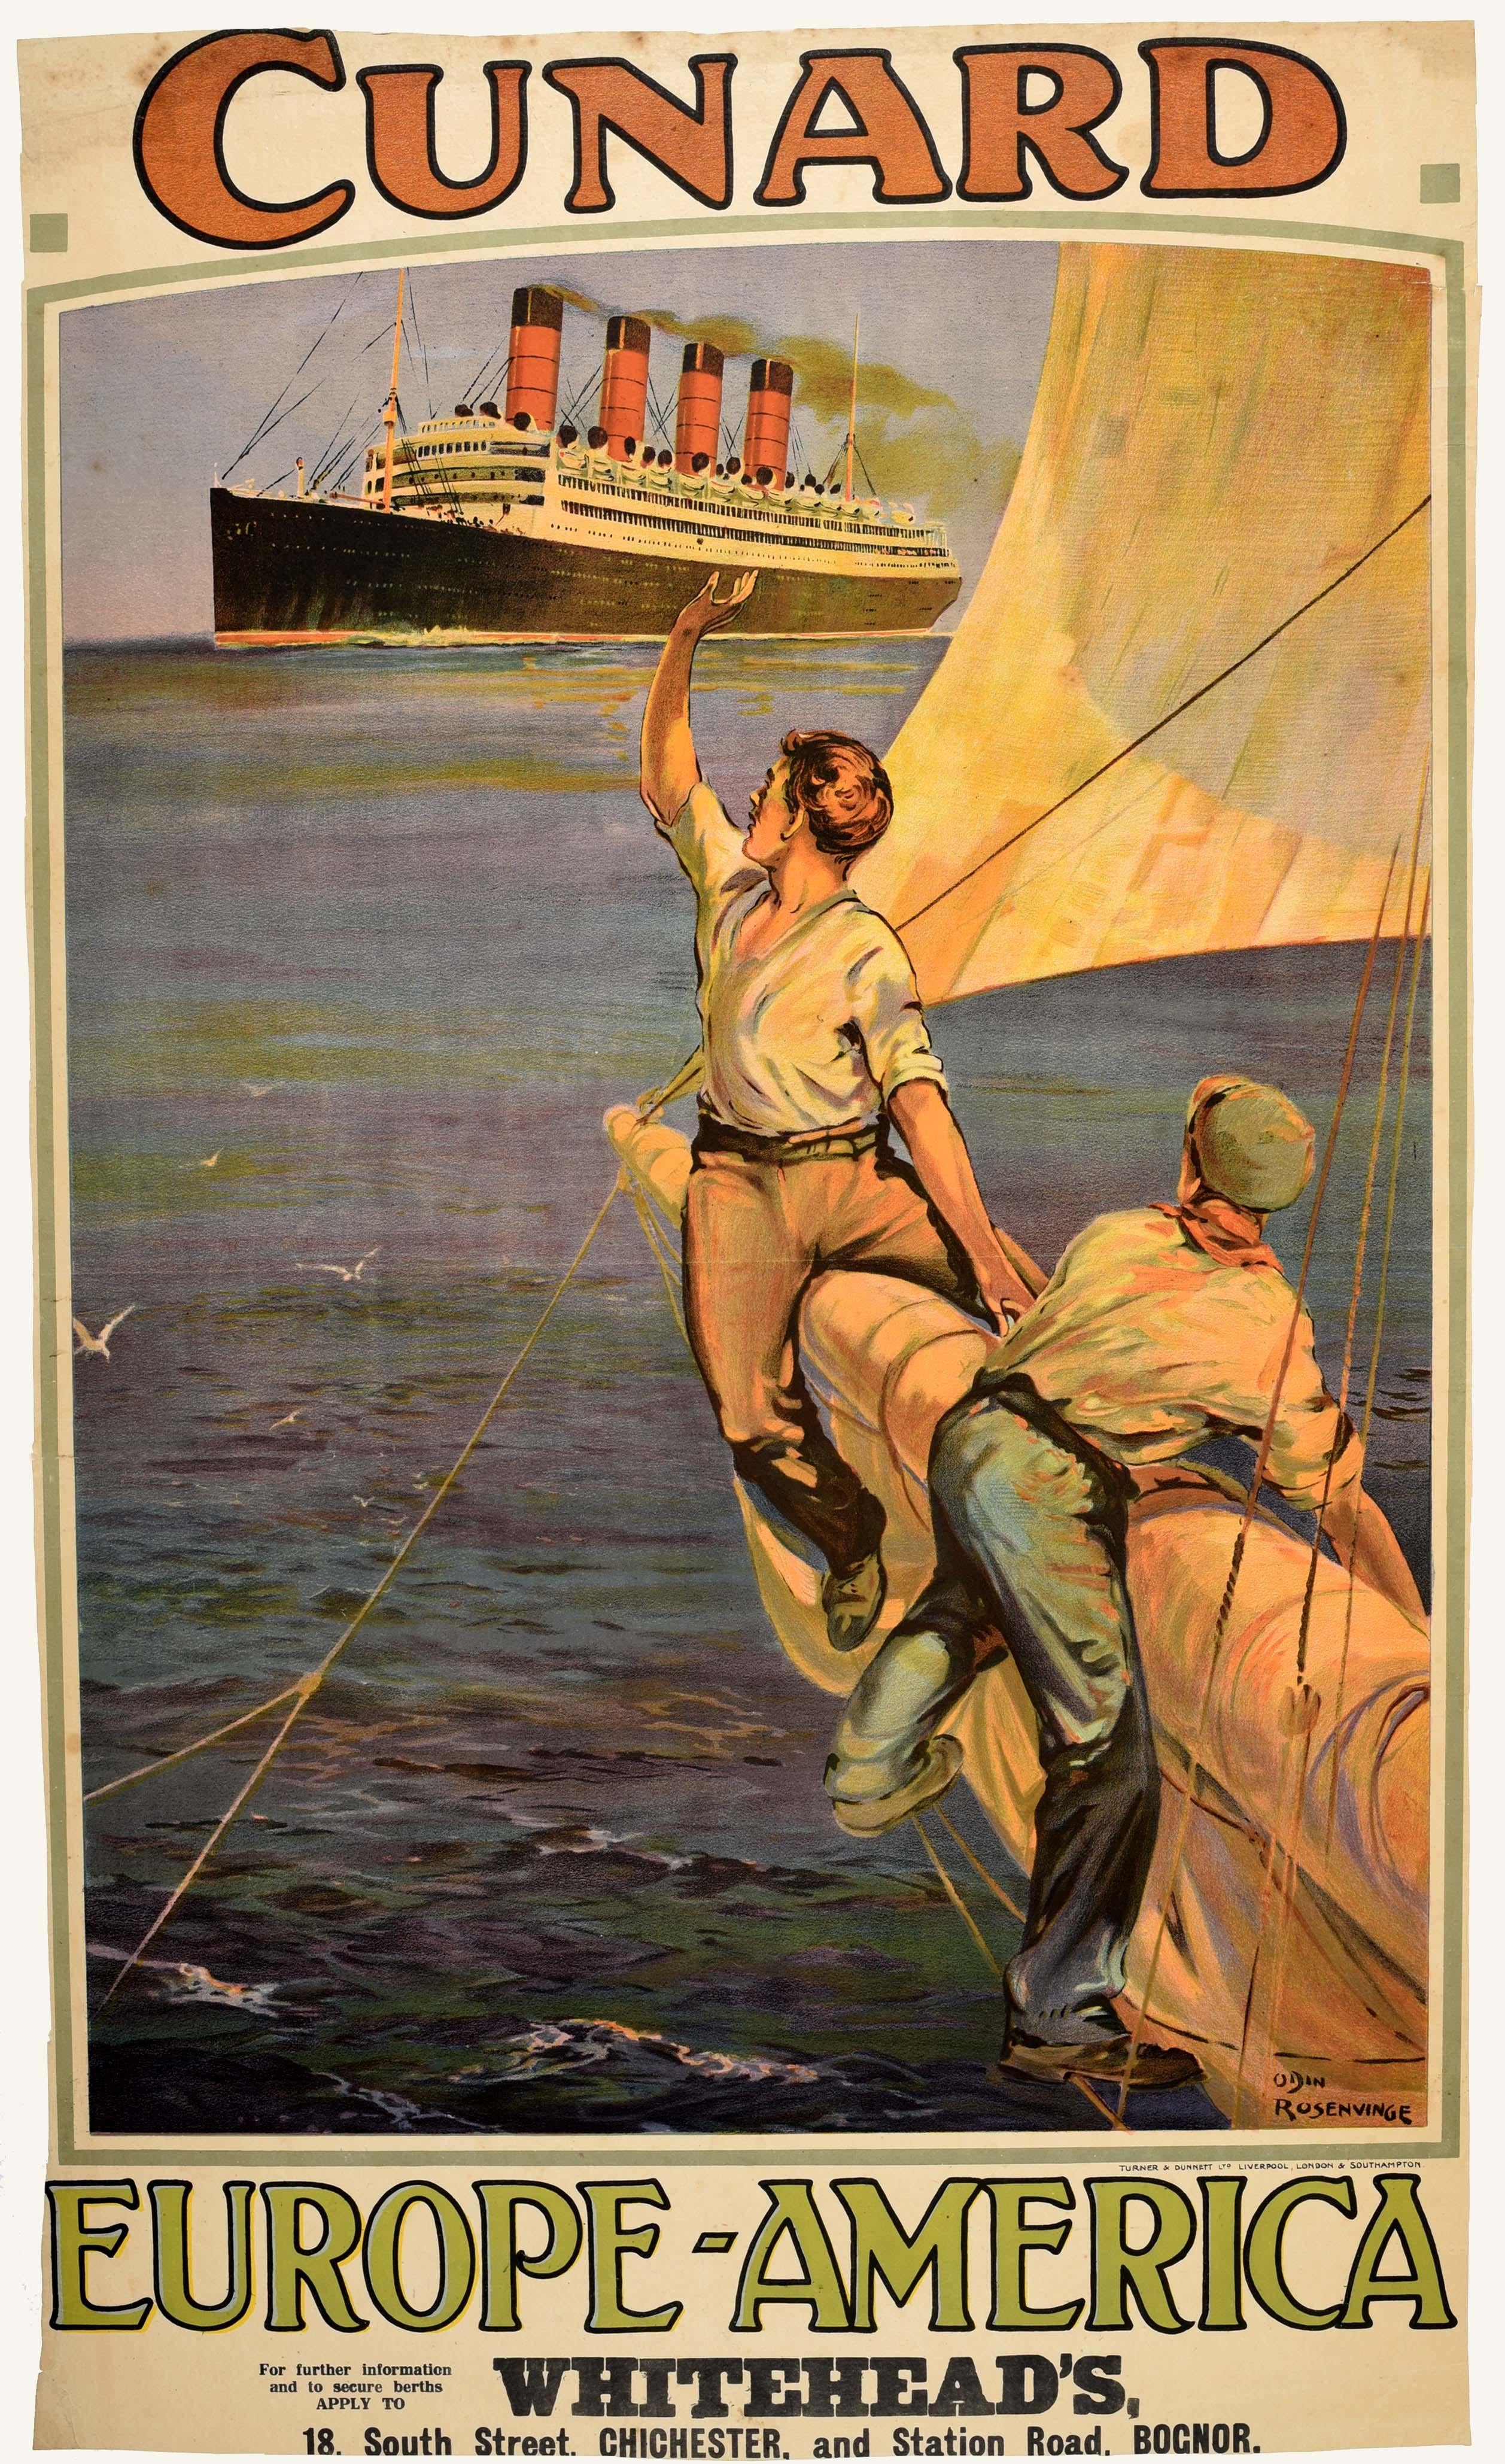 Affiche publicitaire originale et ancienne pour les croisières de la Cunard Line Europe-Amérique présentant une superbe illustration d'Odin Rosenvinge (1880-1957) d'un paquebot Aquitania Cunard à quatre cheminées naviguant en mer, avec deux hommes